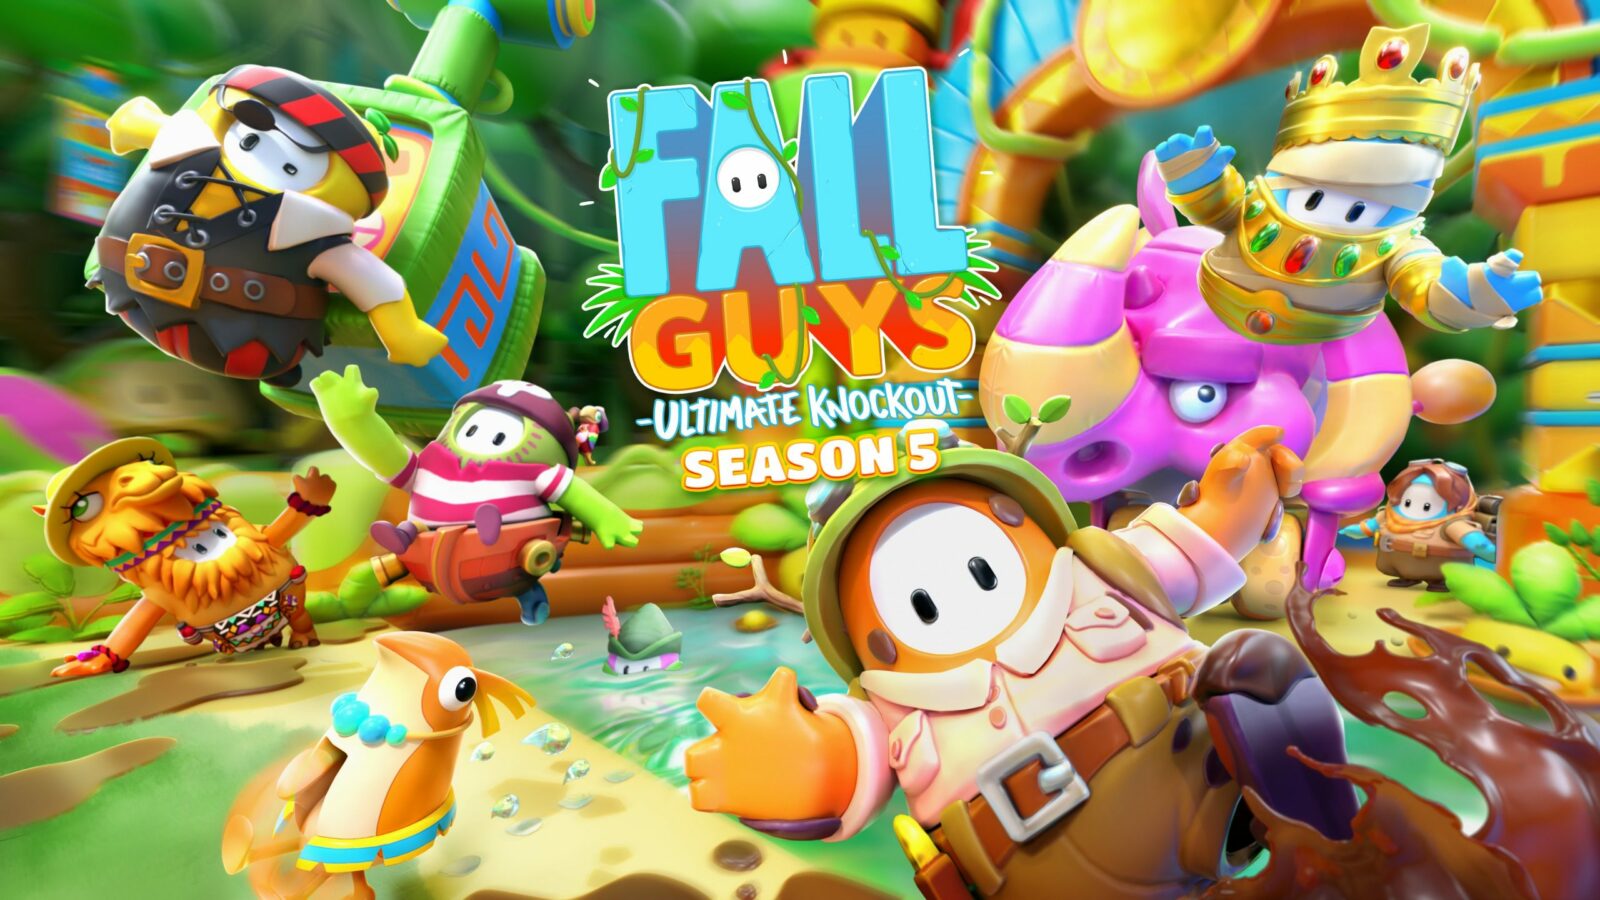 La stagione 5 di Fall Guys porta i giocatori nella giungla